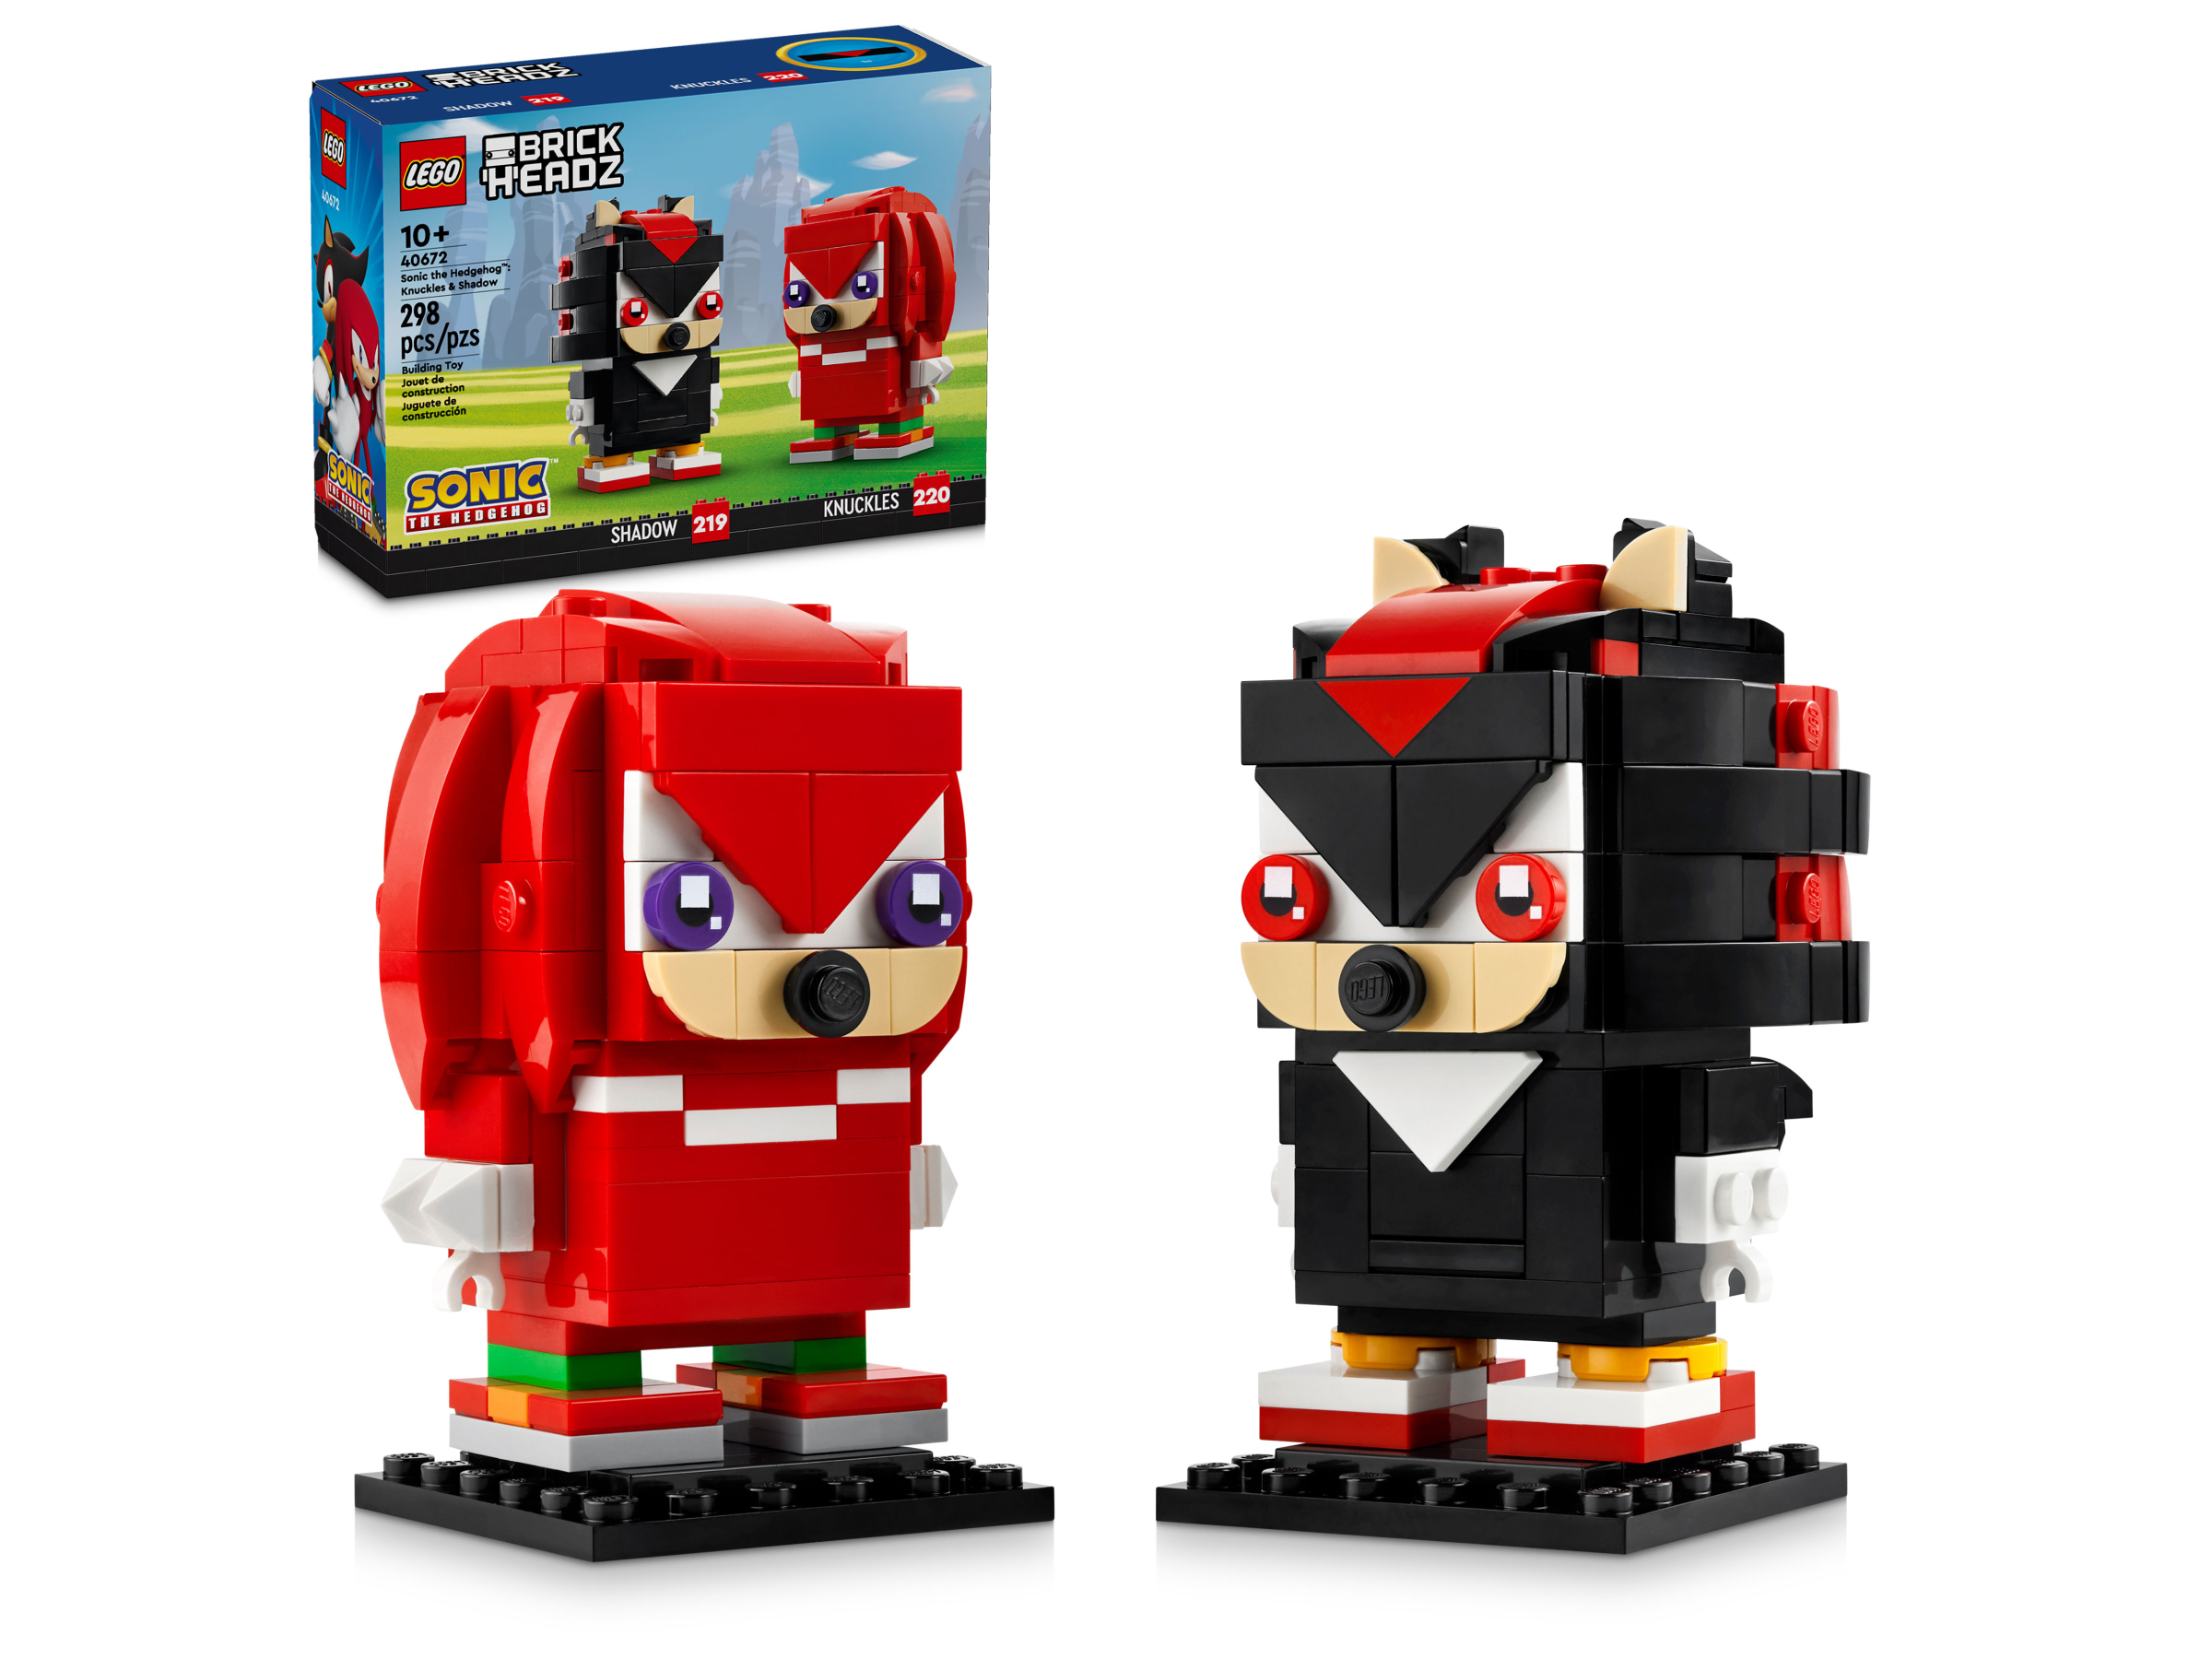 LEGO® Sonic the Hedgehog™ Shadow the Hedgehog Escape – 76995